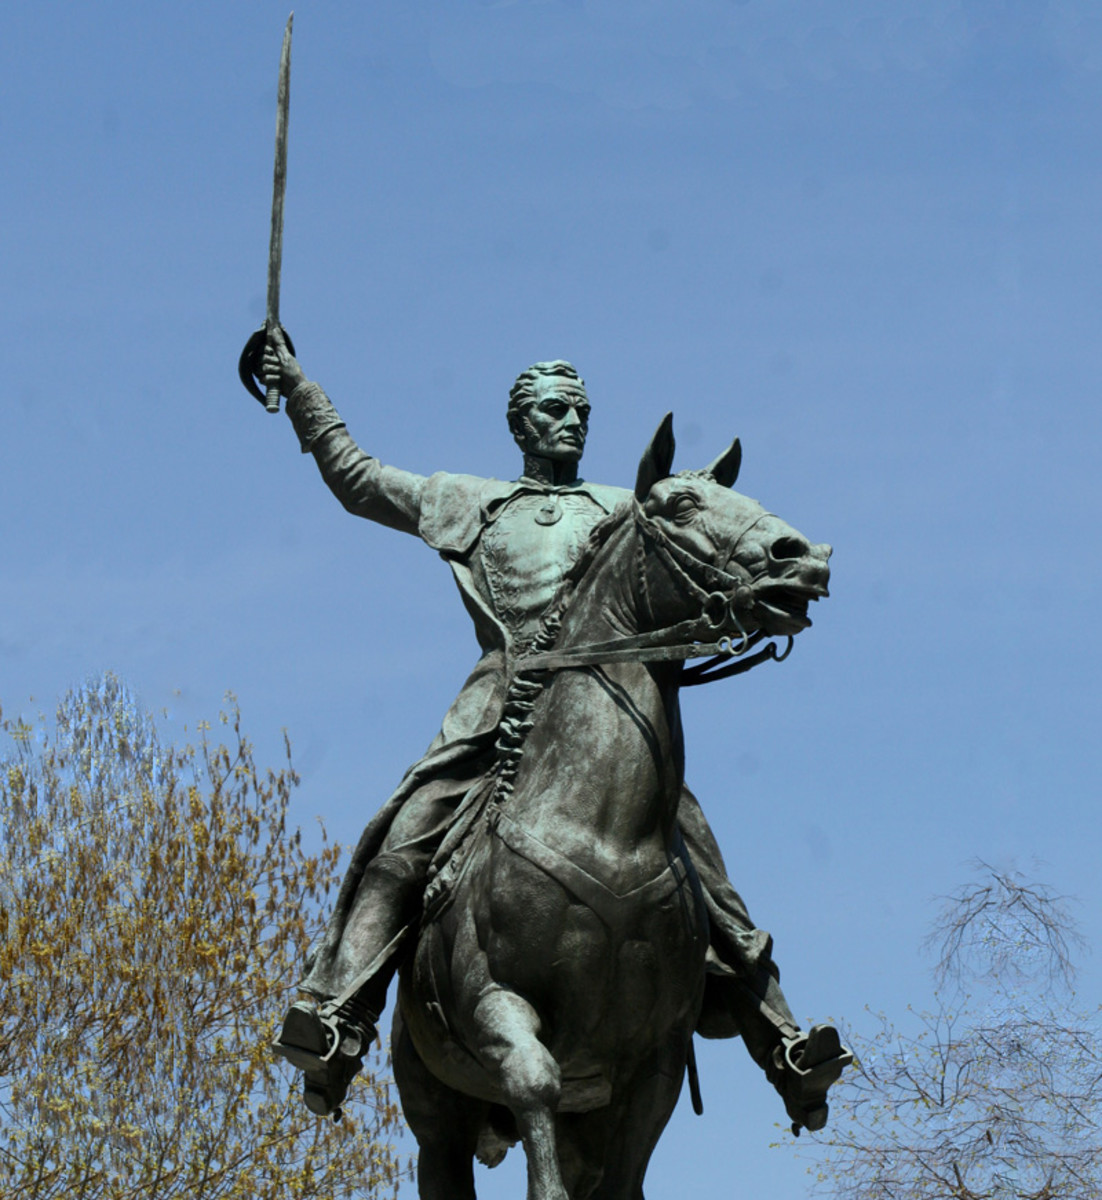 Simón José Antonio de la Santísima Trinidad Bolívar y Palacios (1783-1830) was a South American war hero and political leader. Bolívar is also known as "El Libertador" (the Liberator) because of his key role in Latin America's struggle for independen